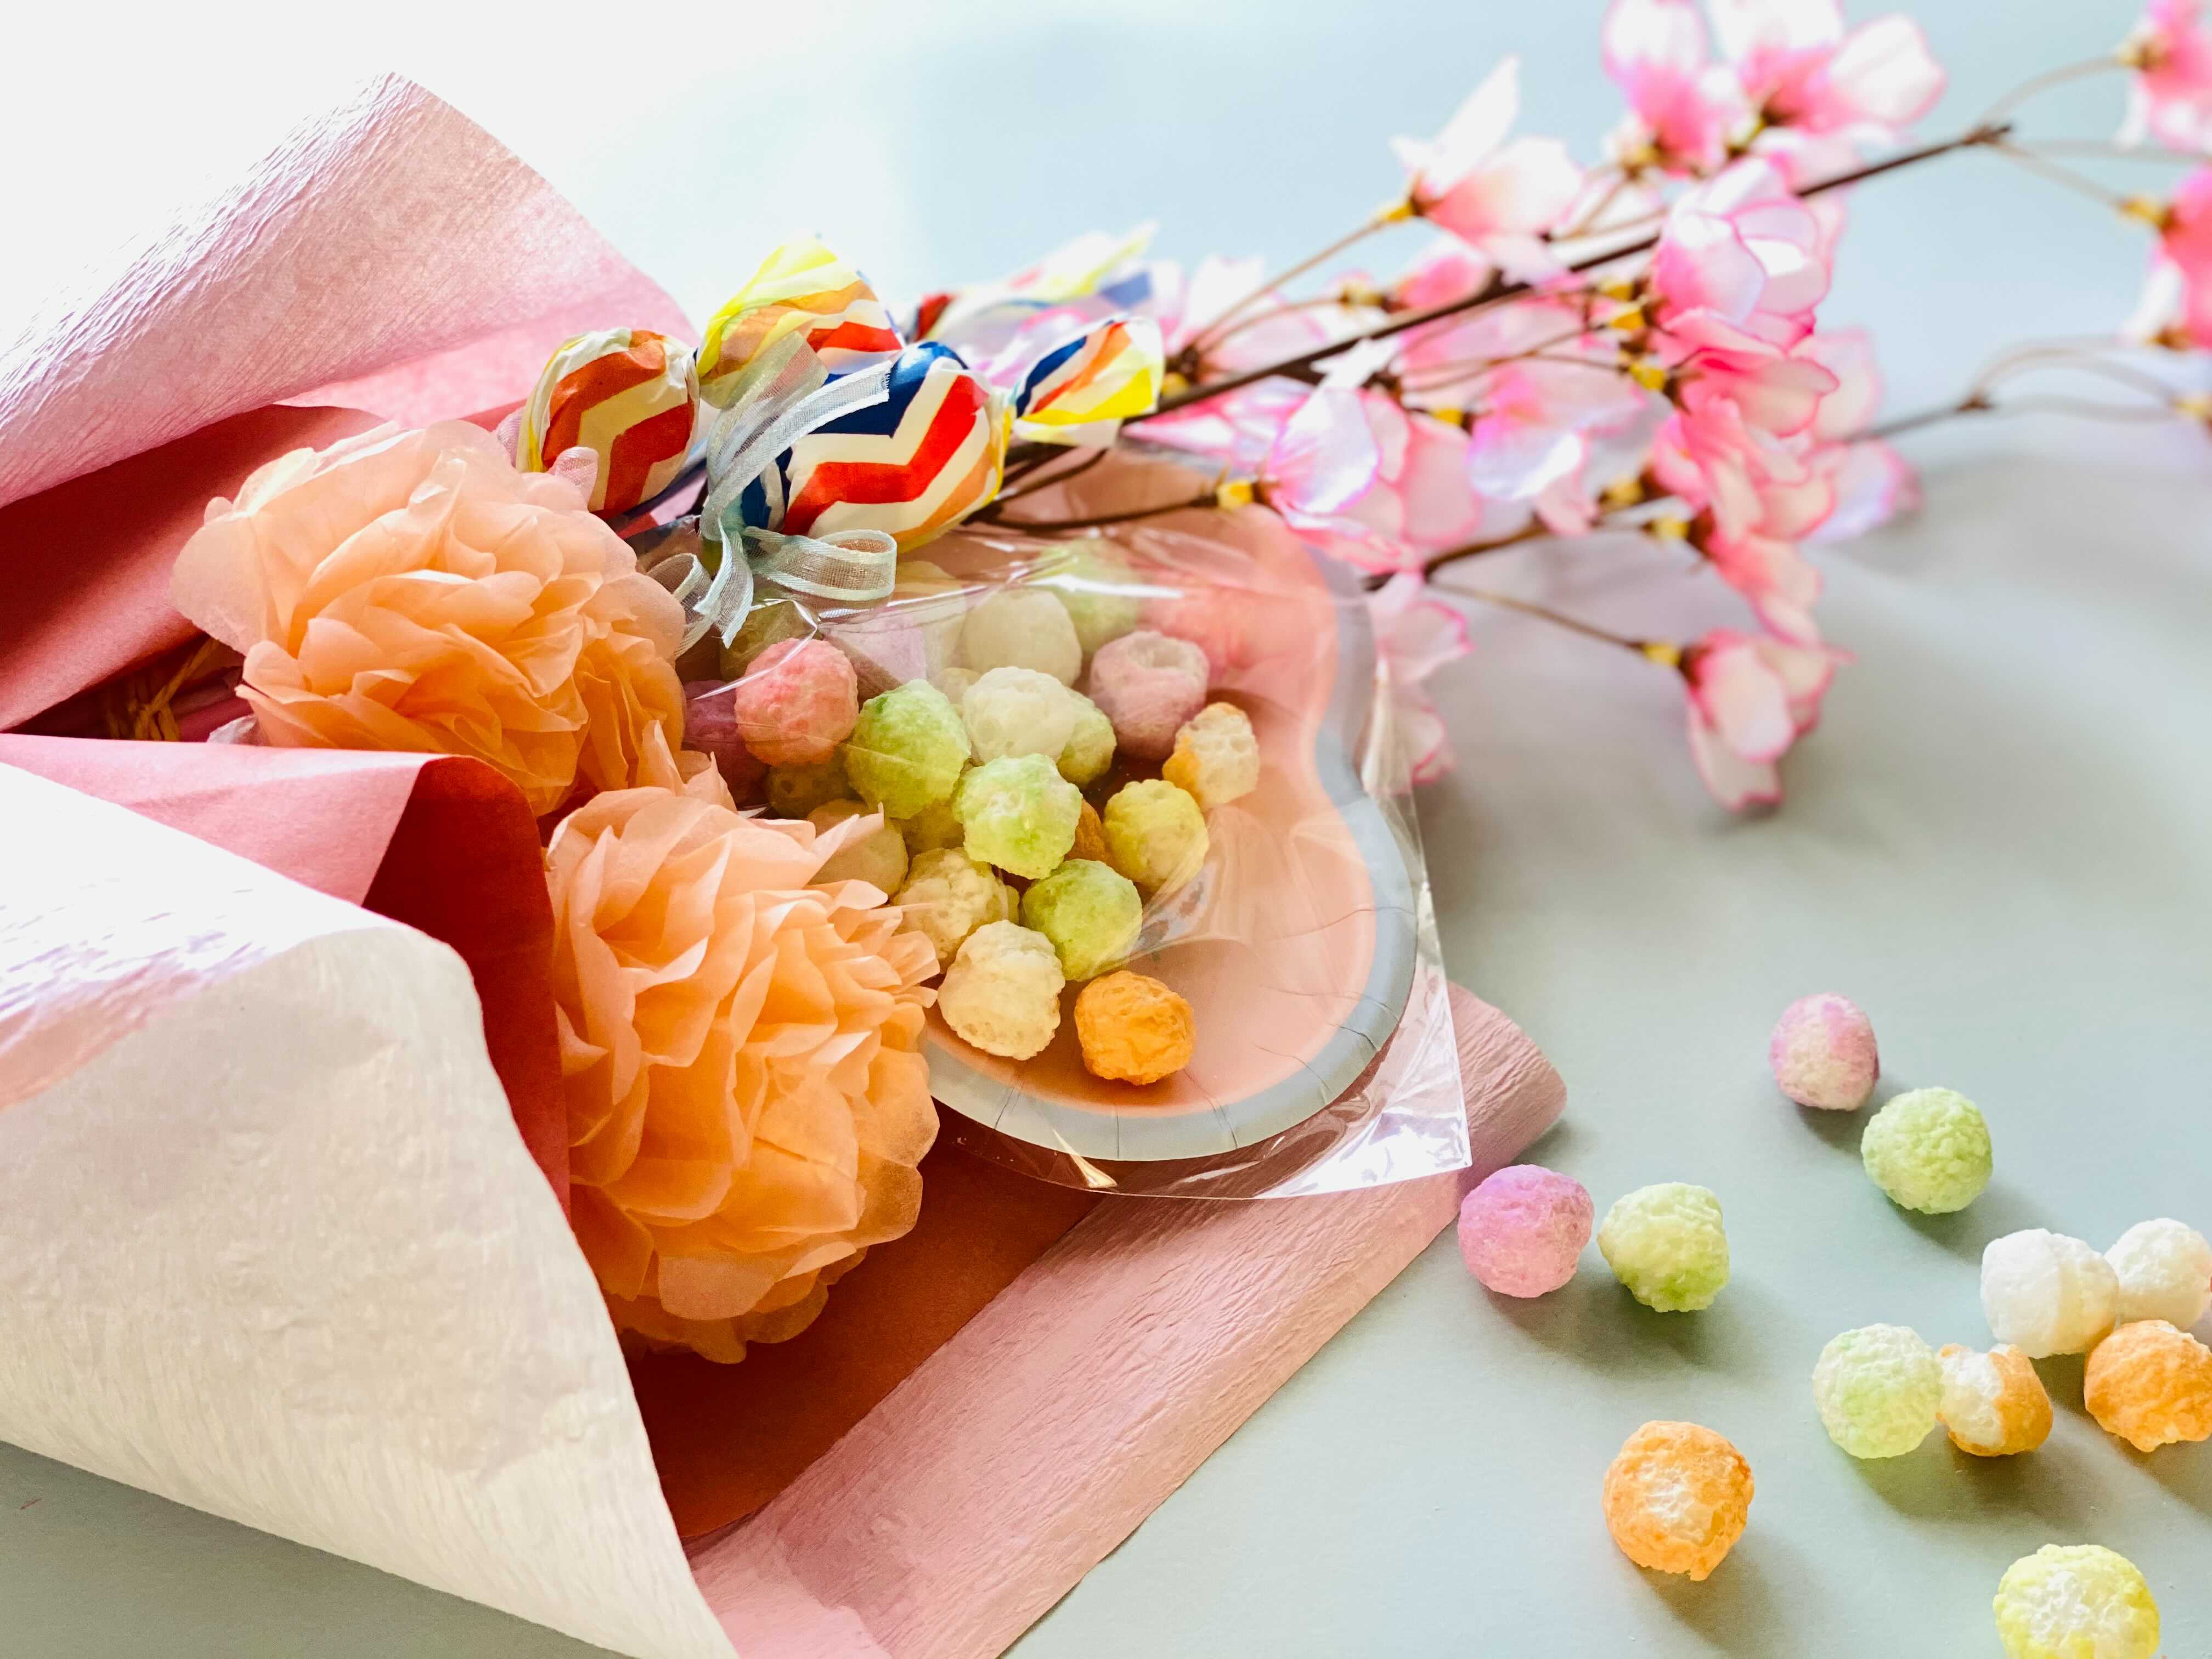 バレンタイン・ひな祭りに食べられる花束キャンディブーケ - ひな祭り